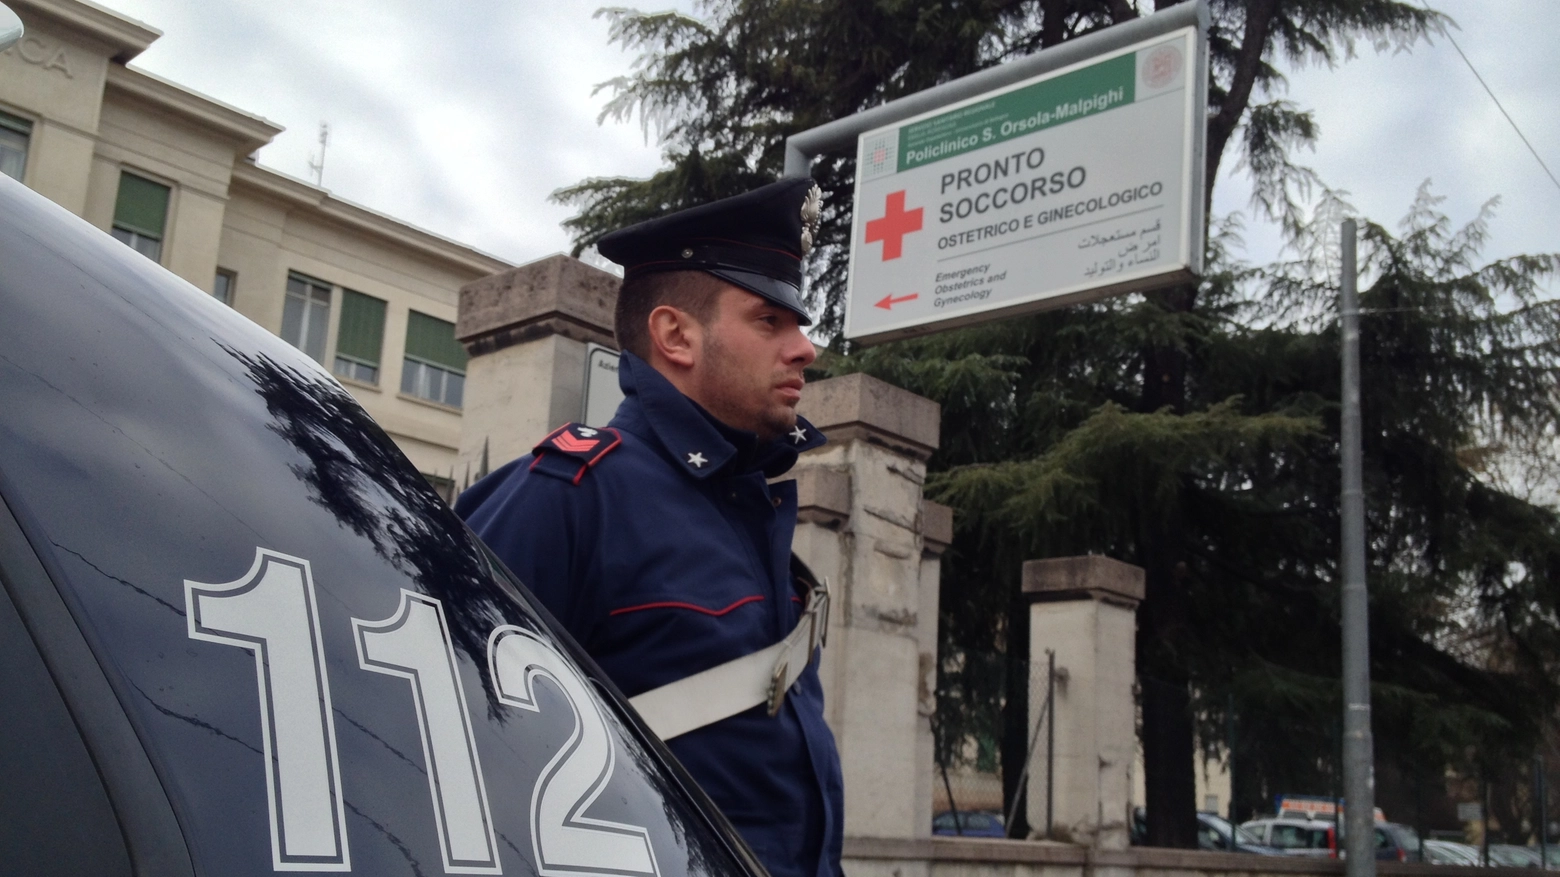 Bologna, picchia la moglie e viene arrestato. Carabinieri fuori dal Sant'Orsola (archivio)